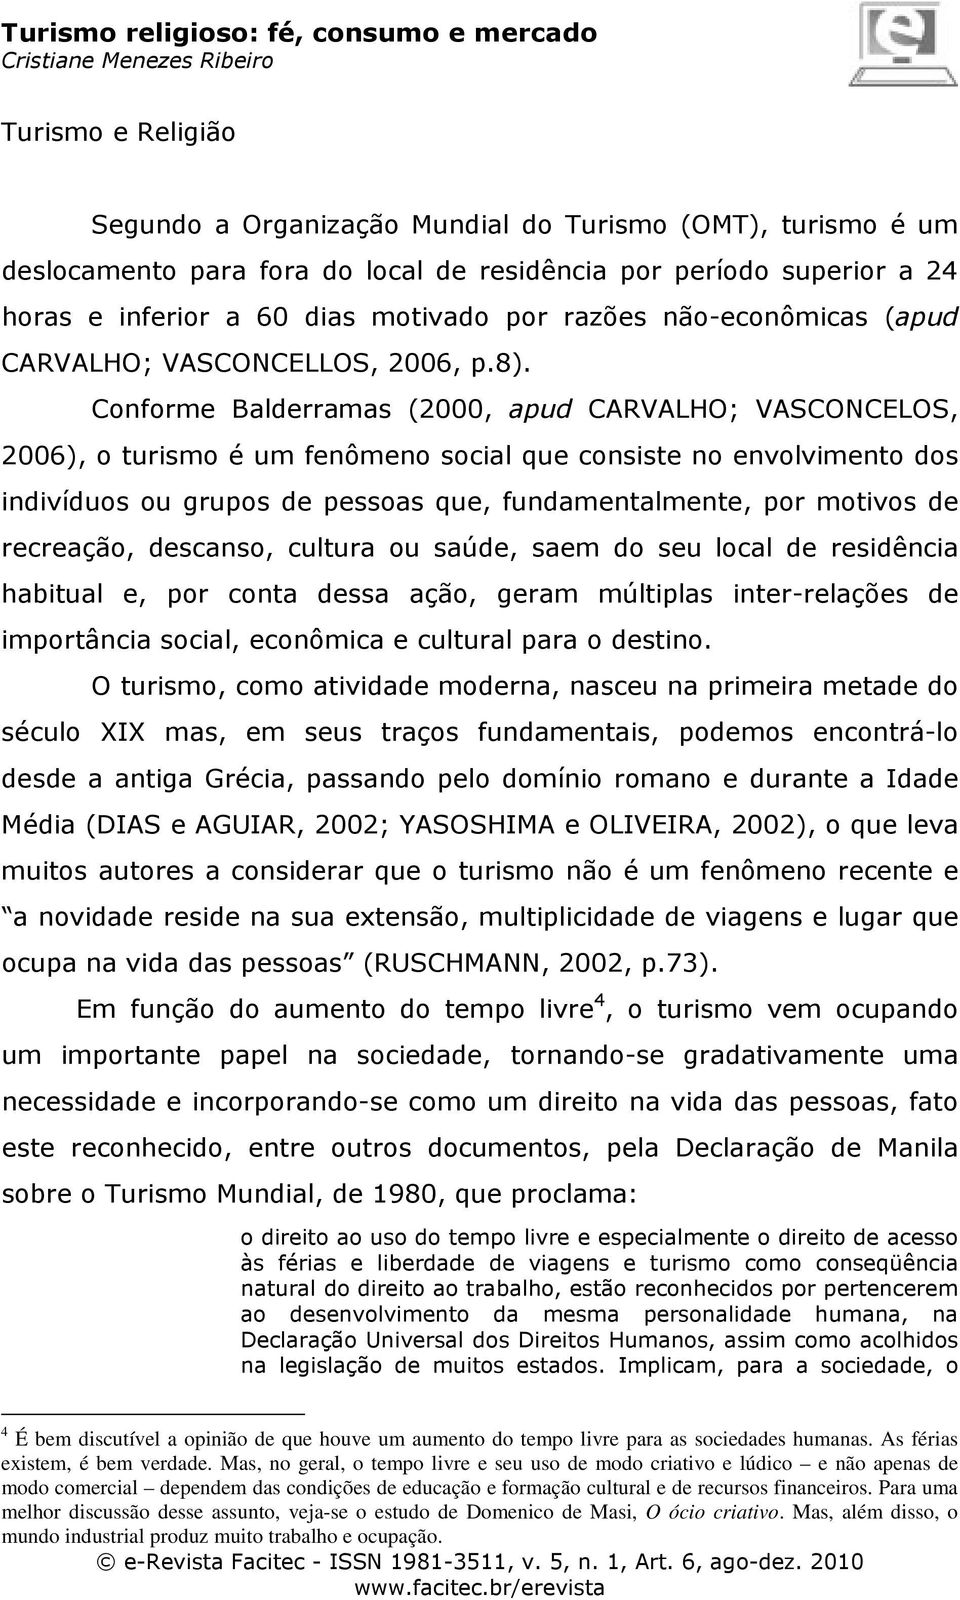 Conforme Balderramas (2000, apud CARVALHO; VASCONCELOS, 2006), o turismo é um fenômeno social que consiste no envolvimento dos indivíduos ou grupos de pessoas que, fundamentalmente, por motivos de